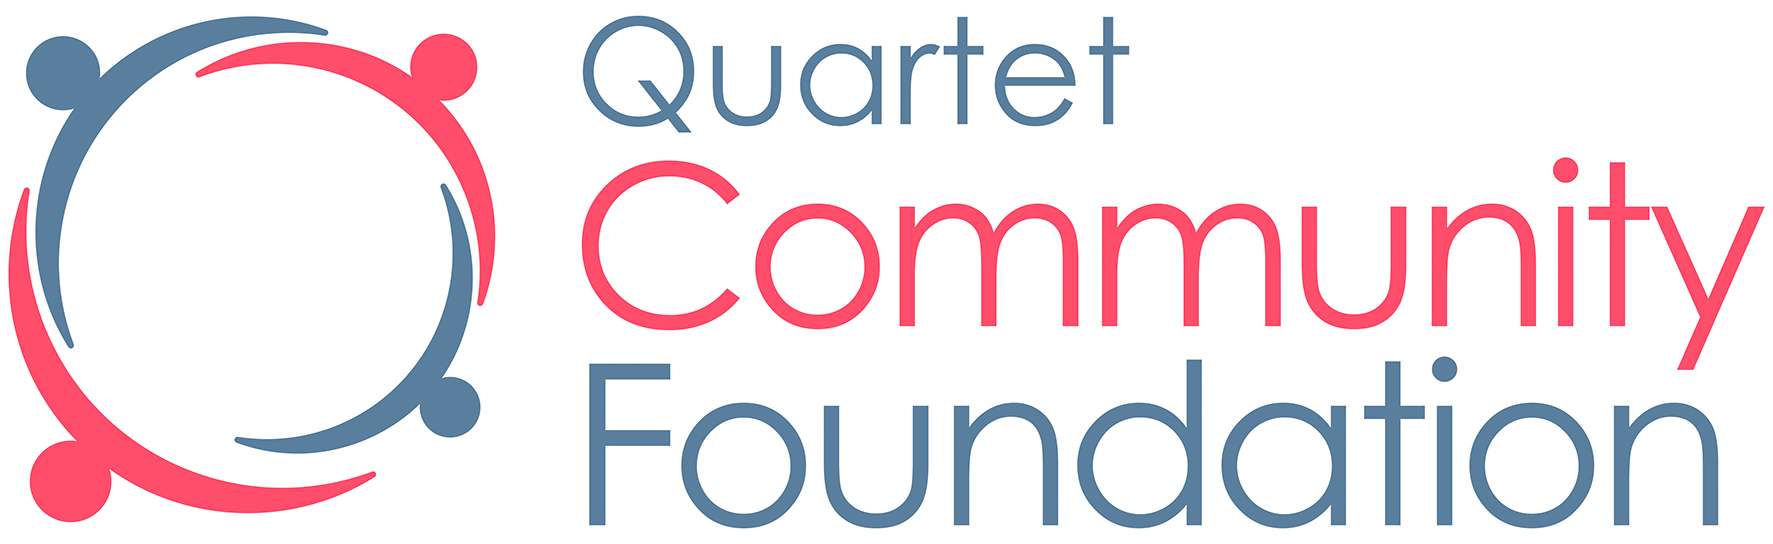 Quartet Community Foundation logo colour